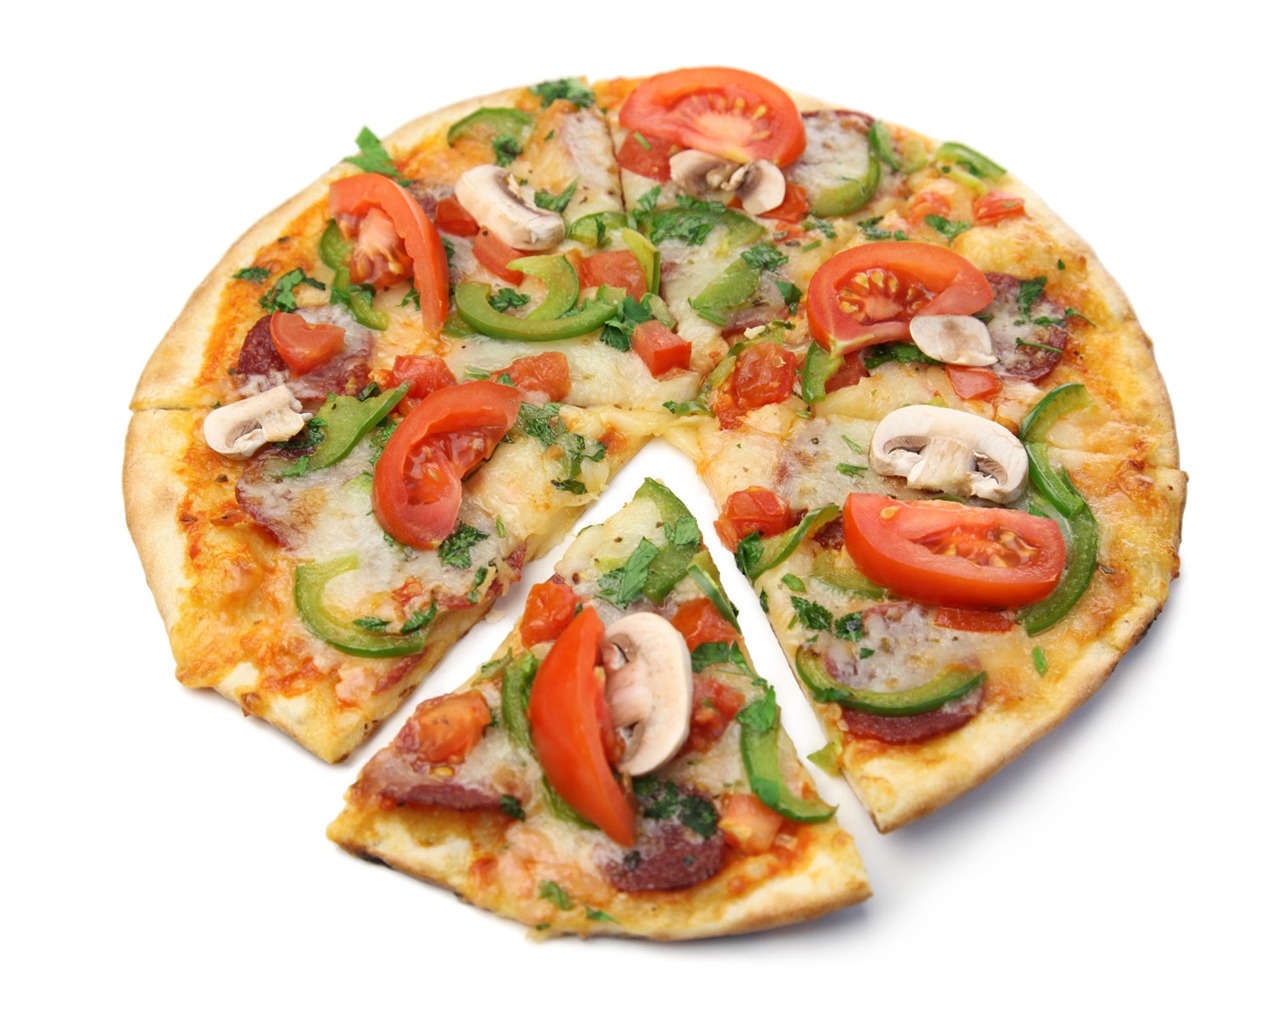 Fondos de pizzerías de Alimentos (4) #14 - 1280x1024